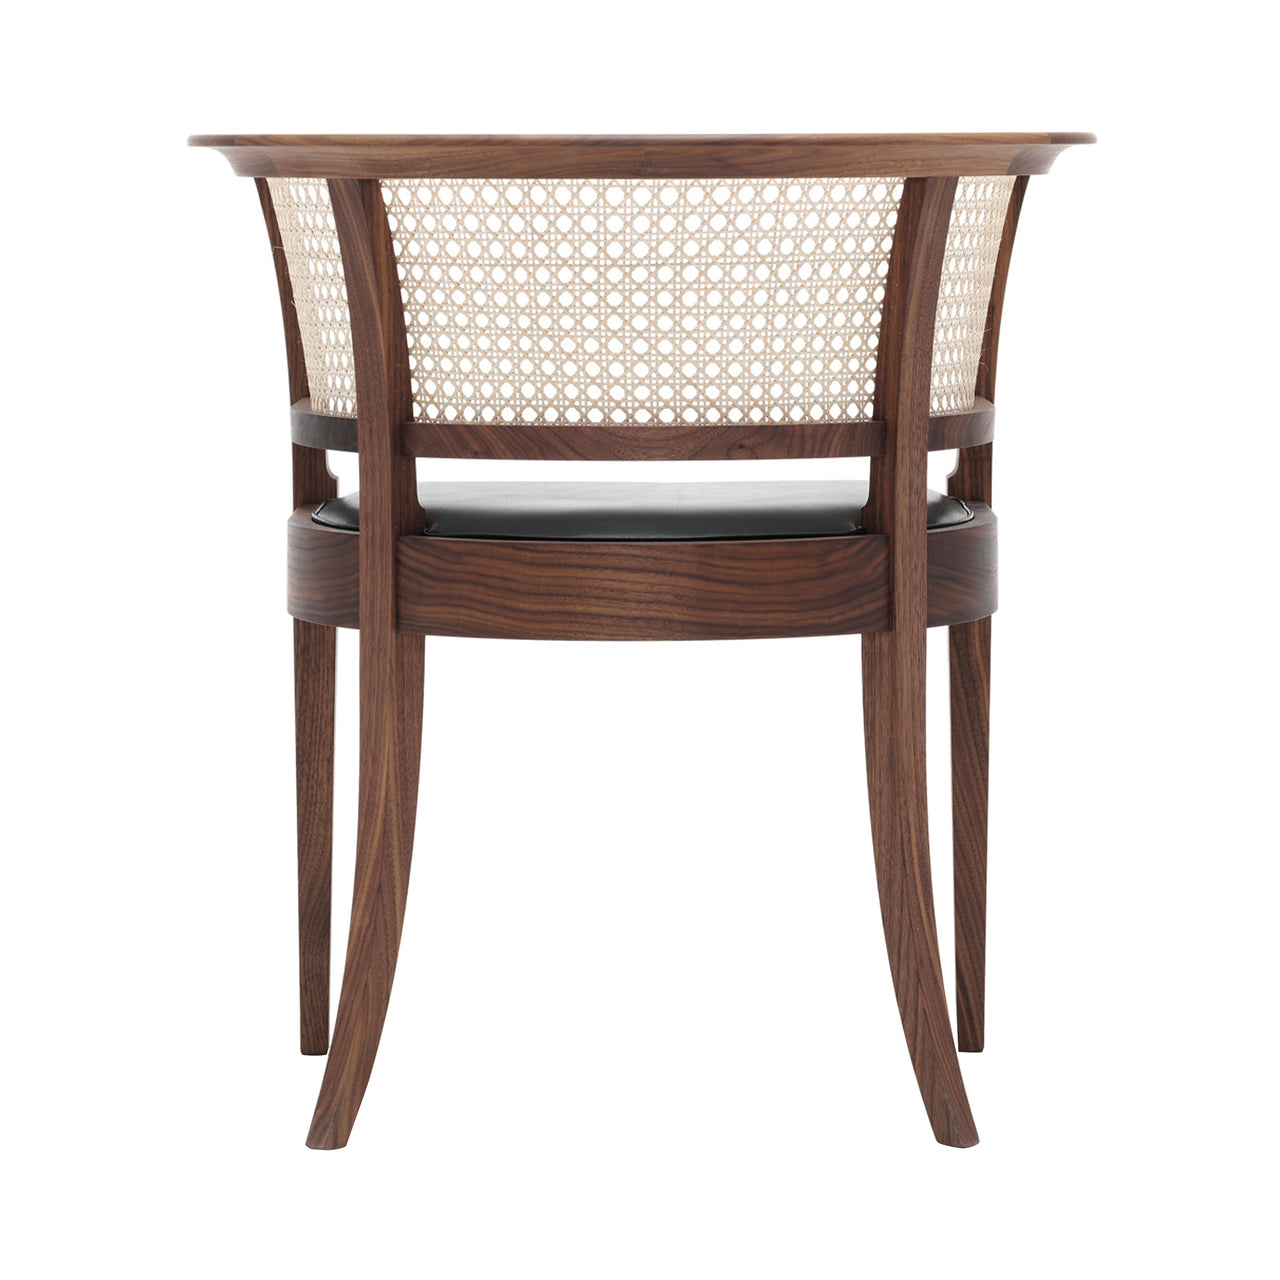 KK96620 Faaborg Chair: Oiled Walnut